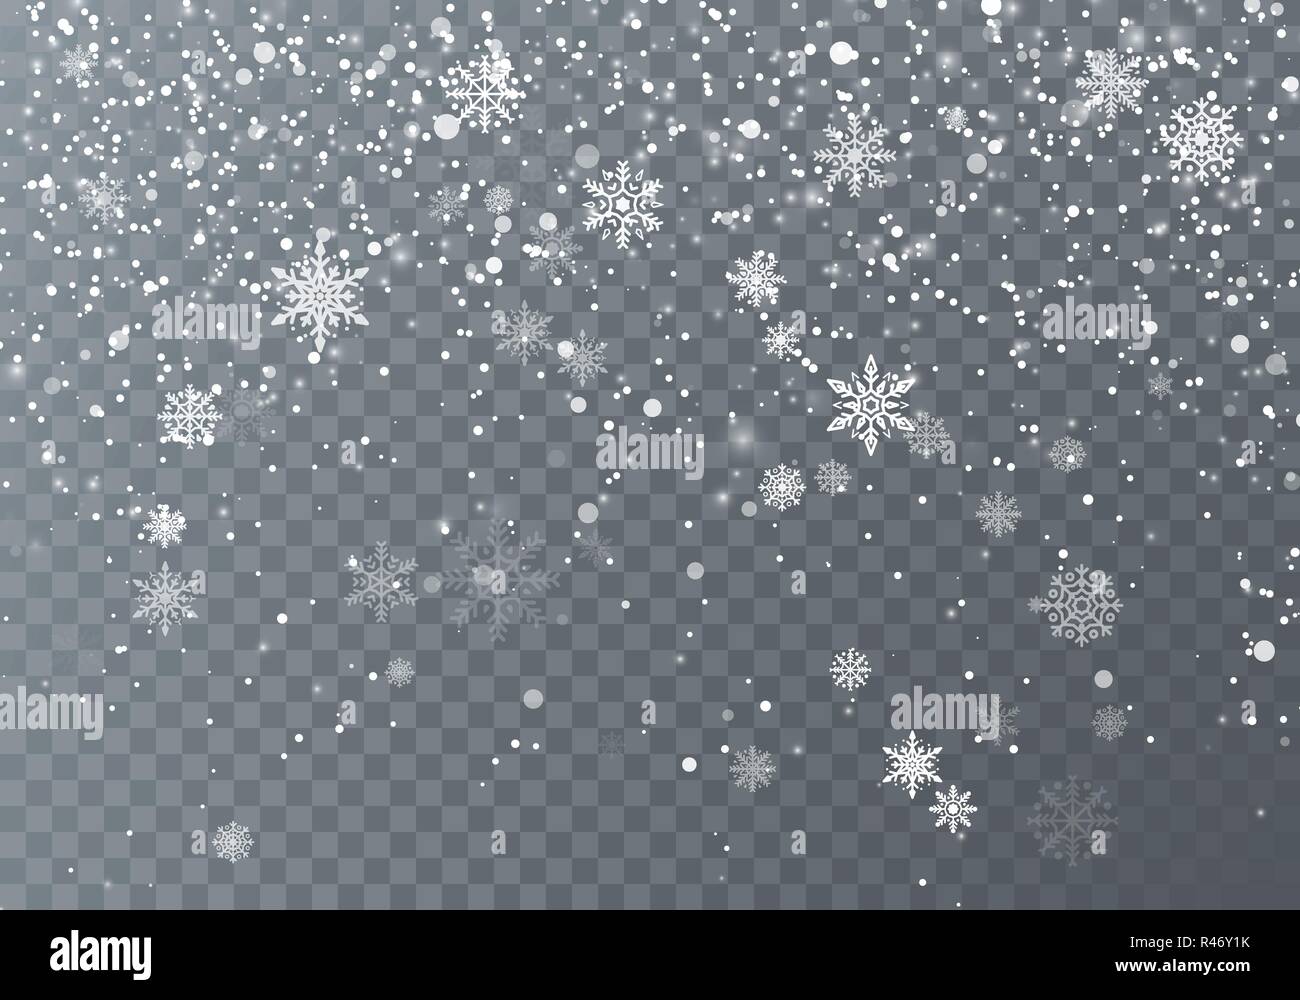 Schneefall. Weihnachten Schnee. Fallende Schneeflocken auf dunklen transparenten Hintergrund. Weihnachten Urlaub Hintergrund. Vector Illustration Stock Vektor